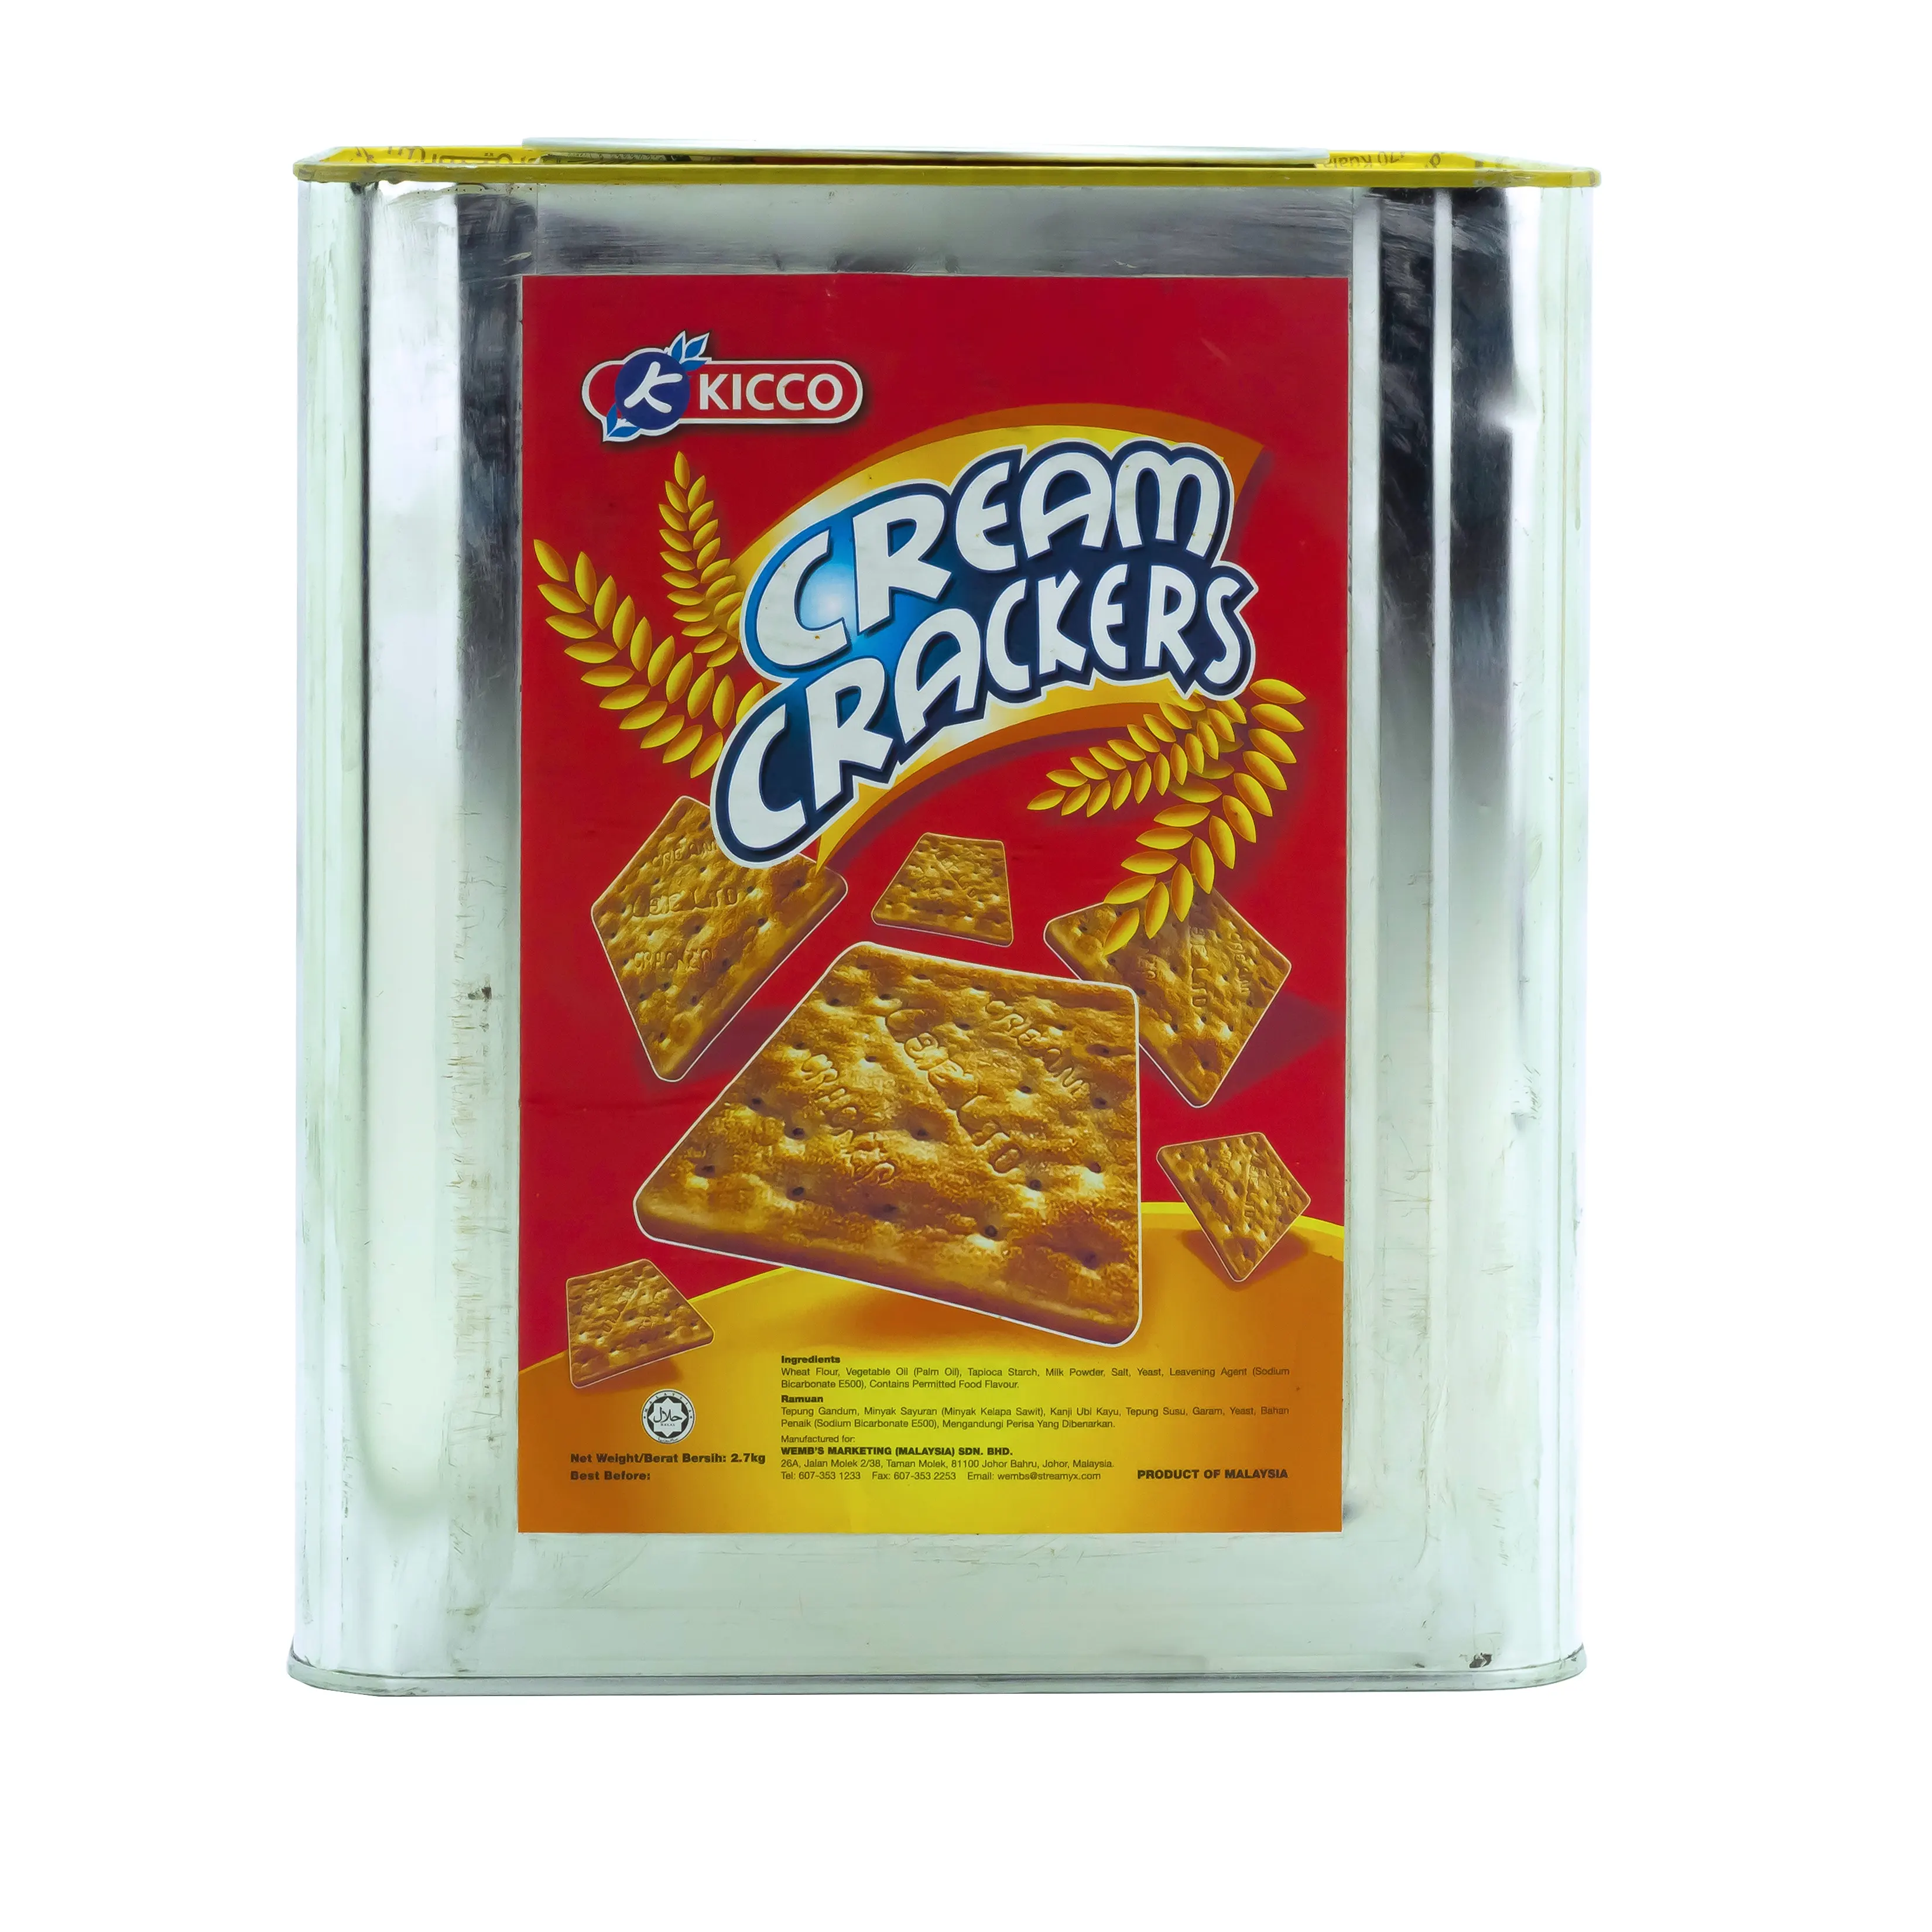 Delicious aromatic cream cracker tin biscuit